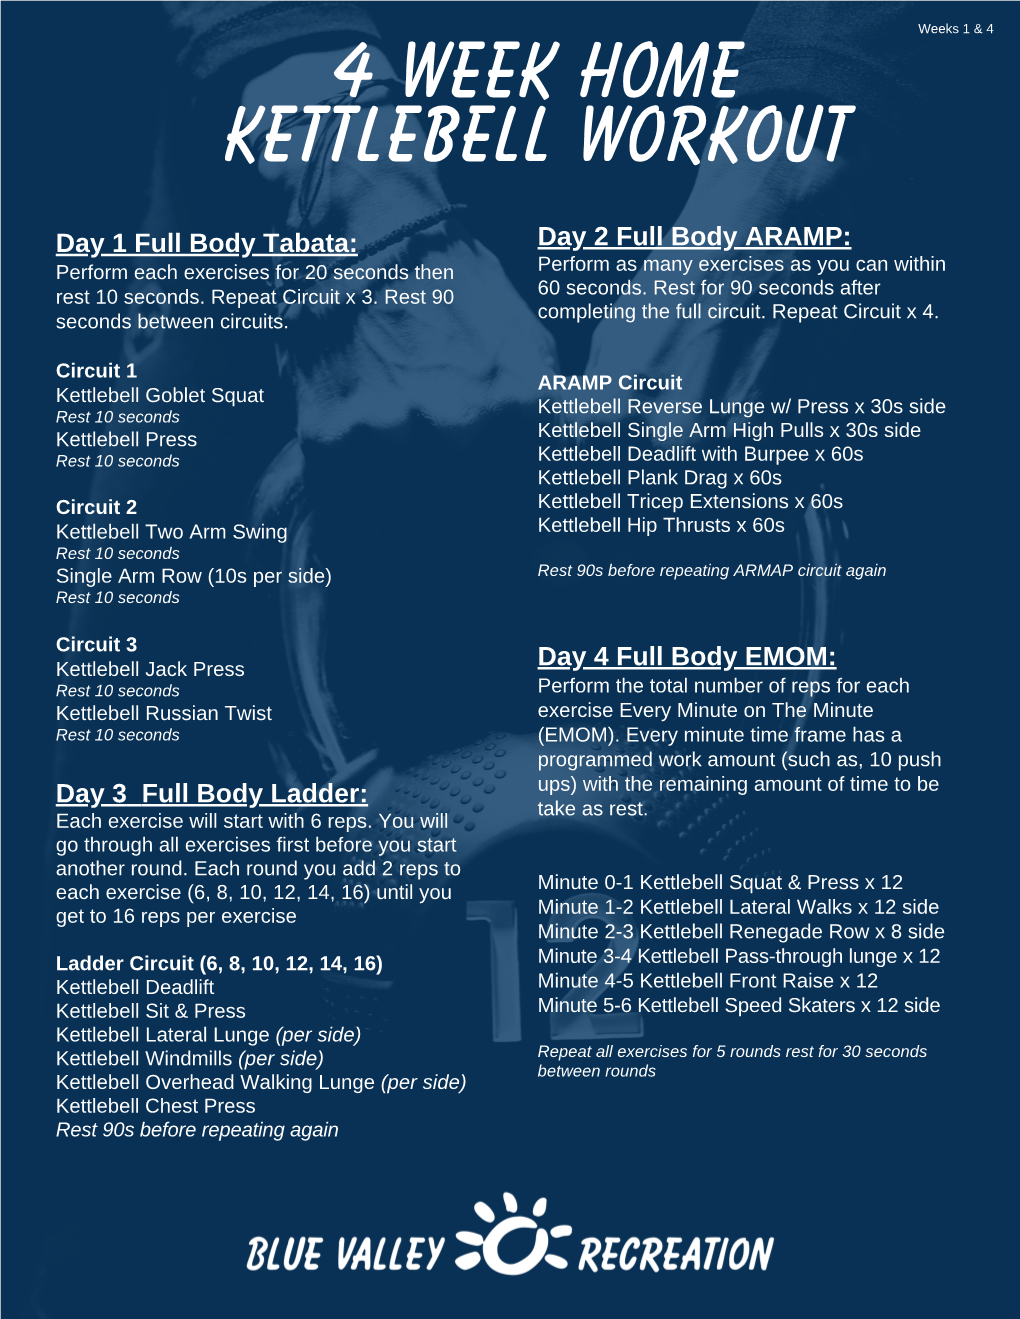 4 Week Home Kettlebell Workout